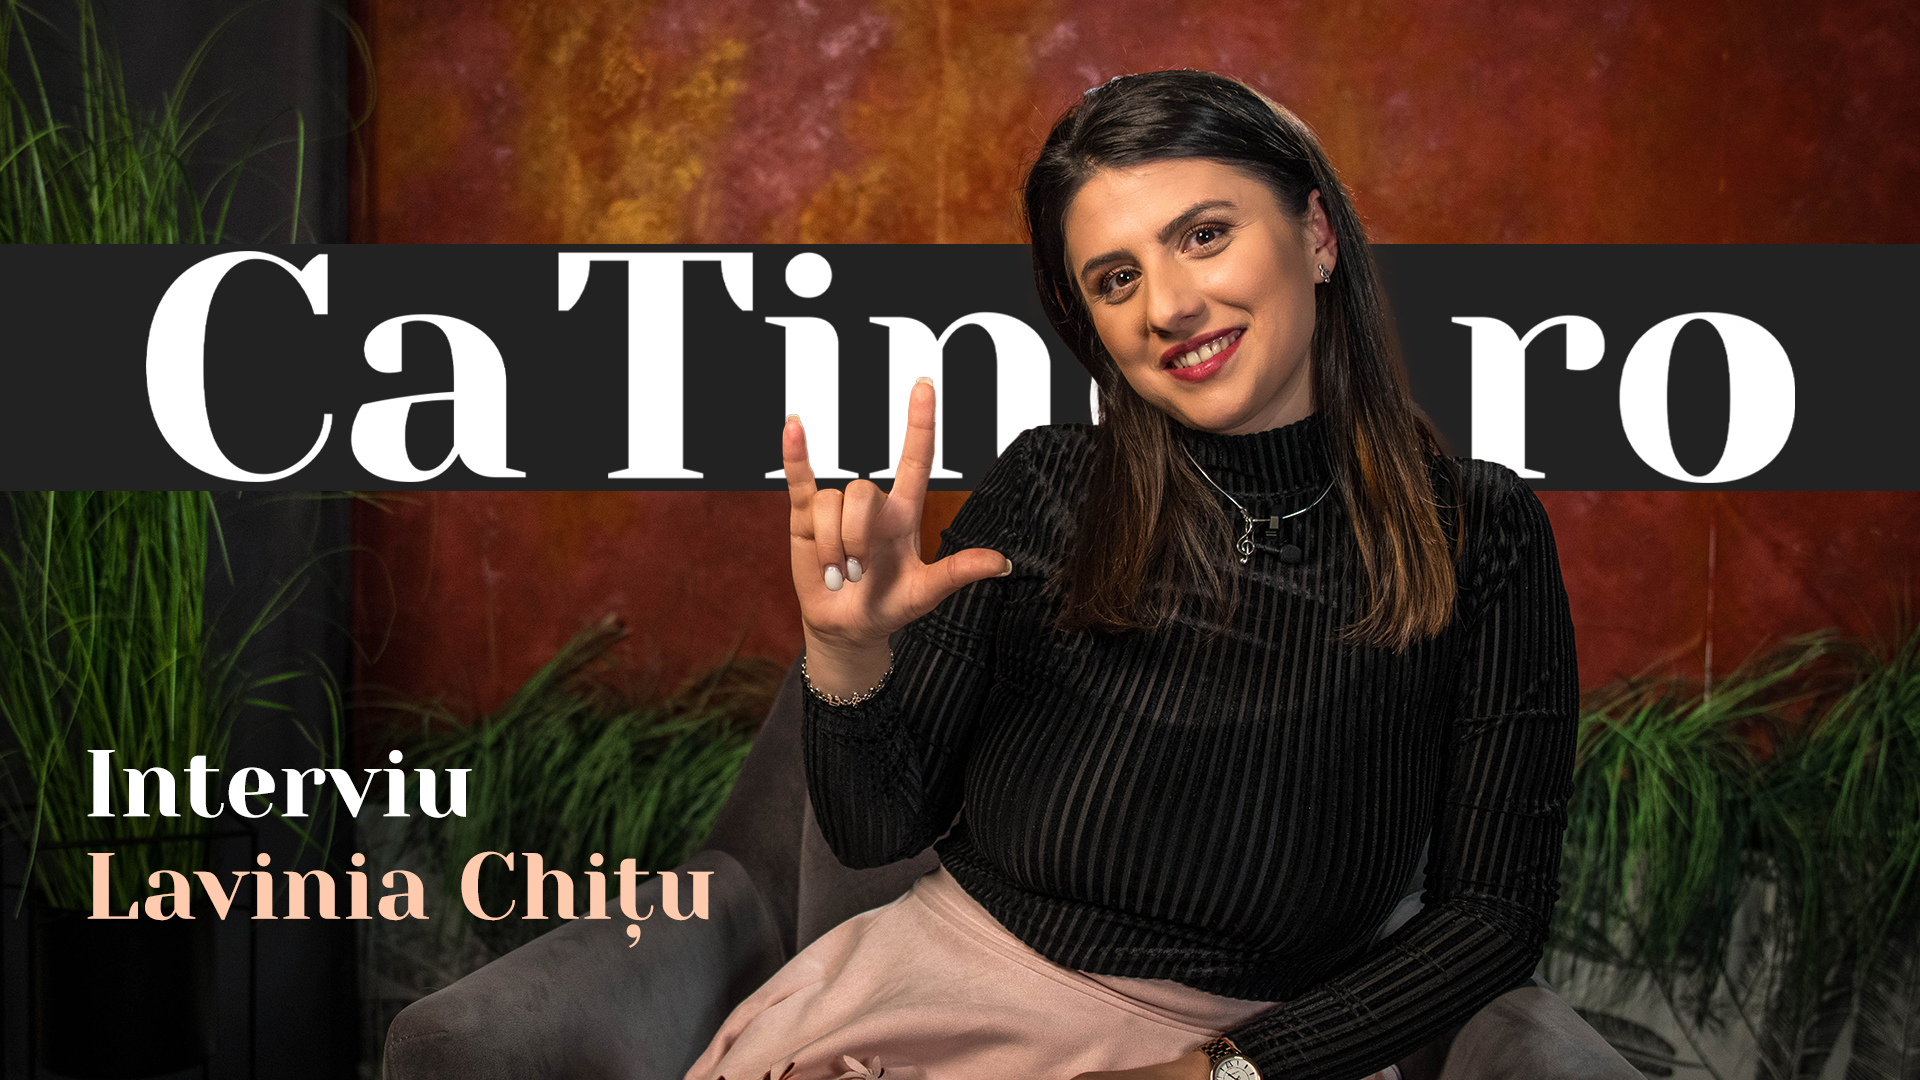 CaTine.ro - Interviu Lavinia Chitu